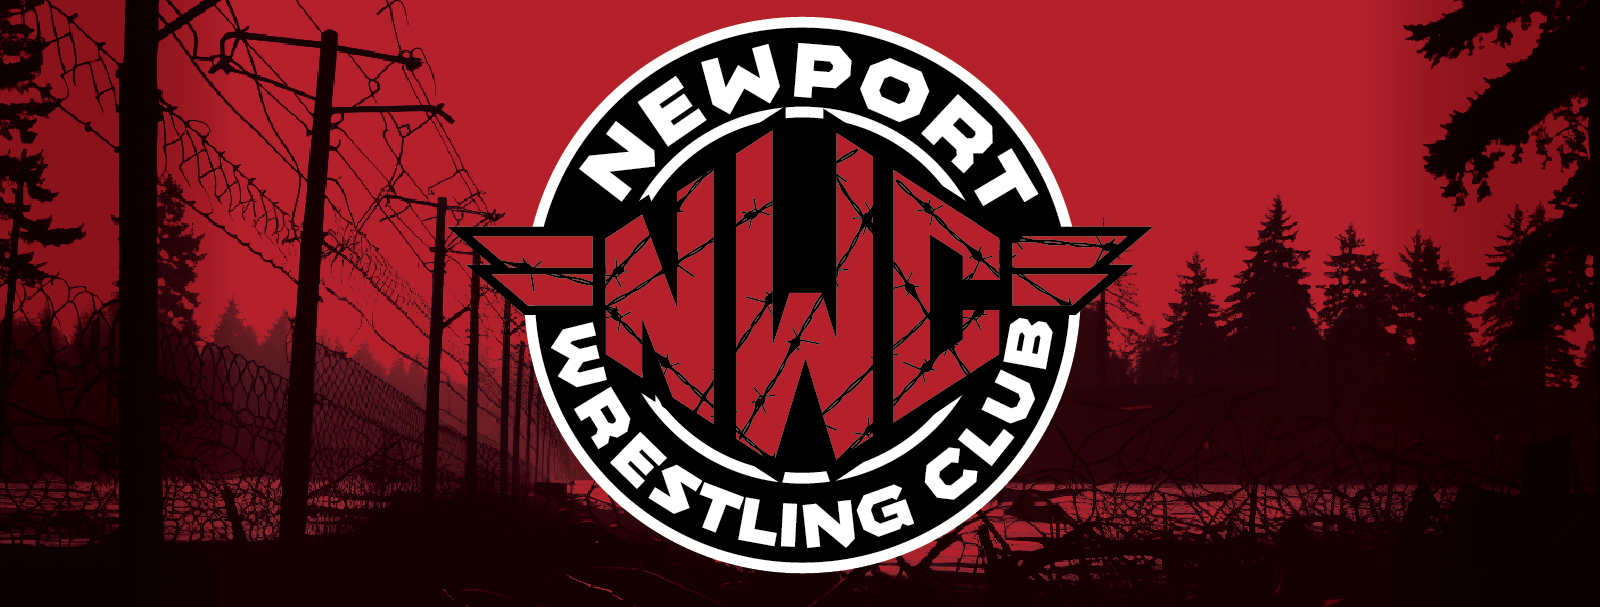 Newport Wrestling Club Gear